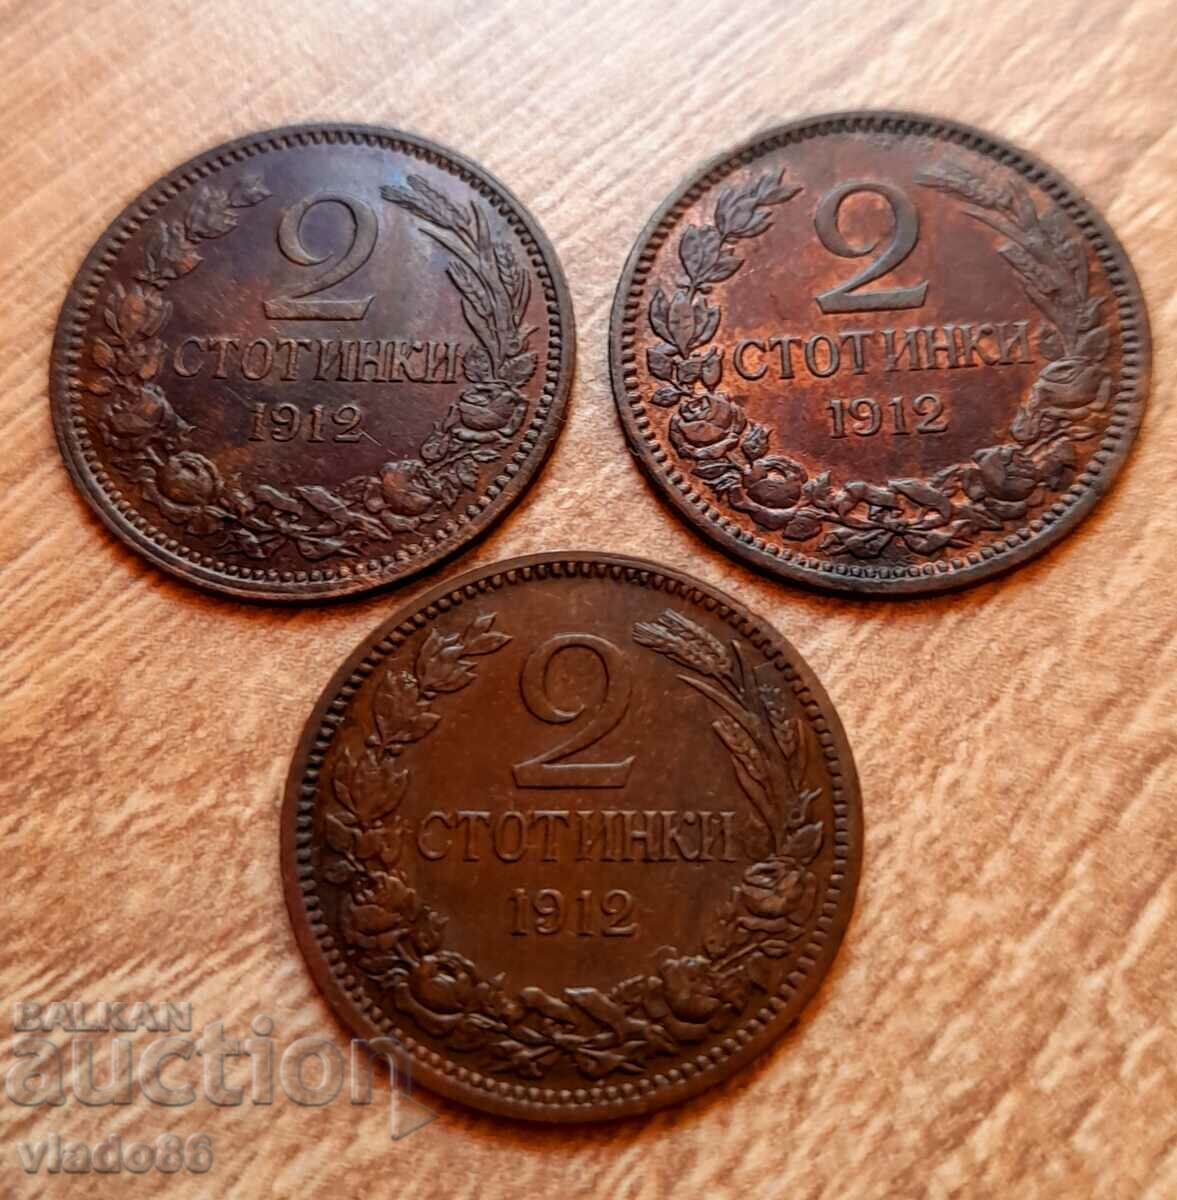 3 pieces 2 cents 1912